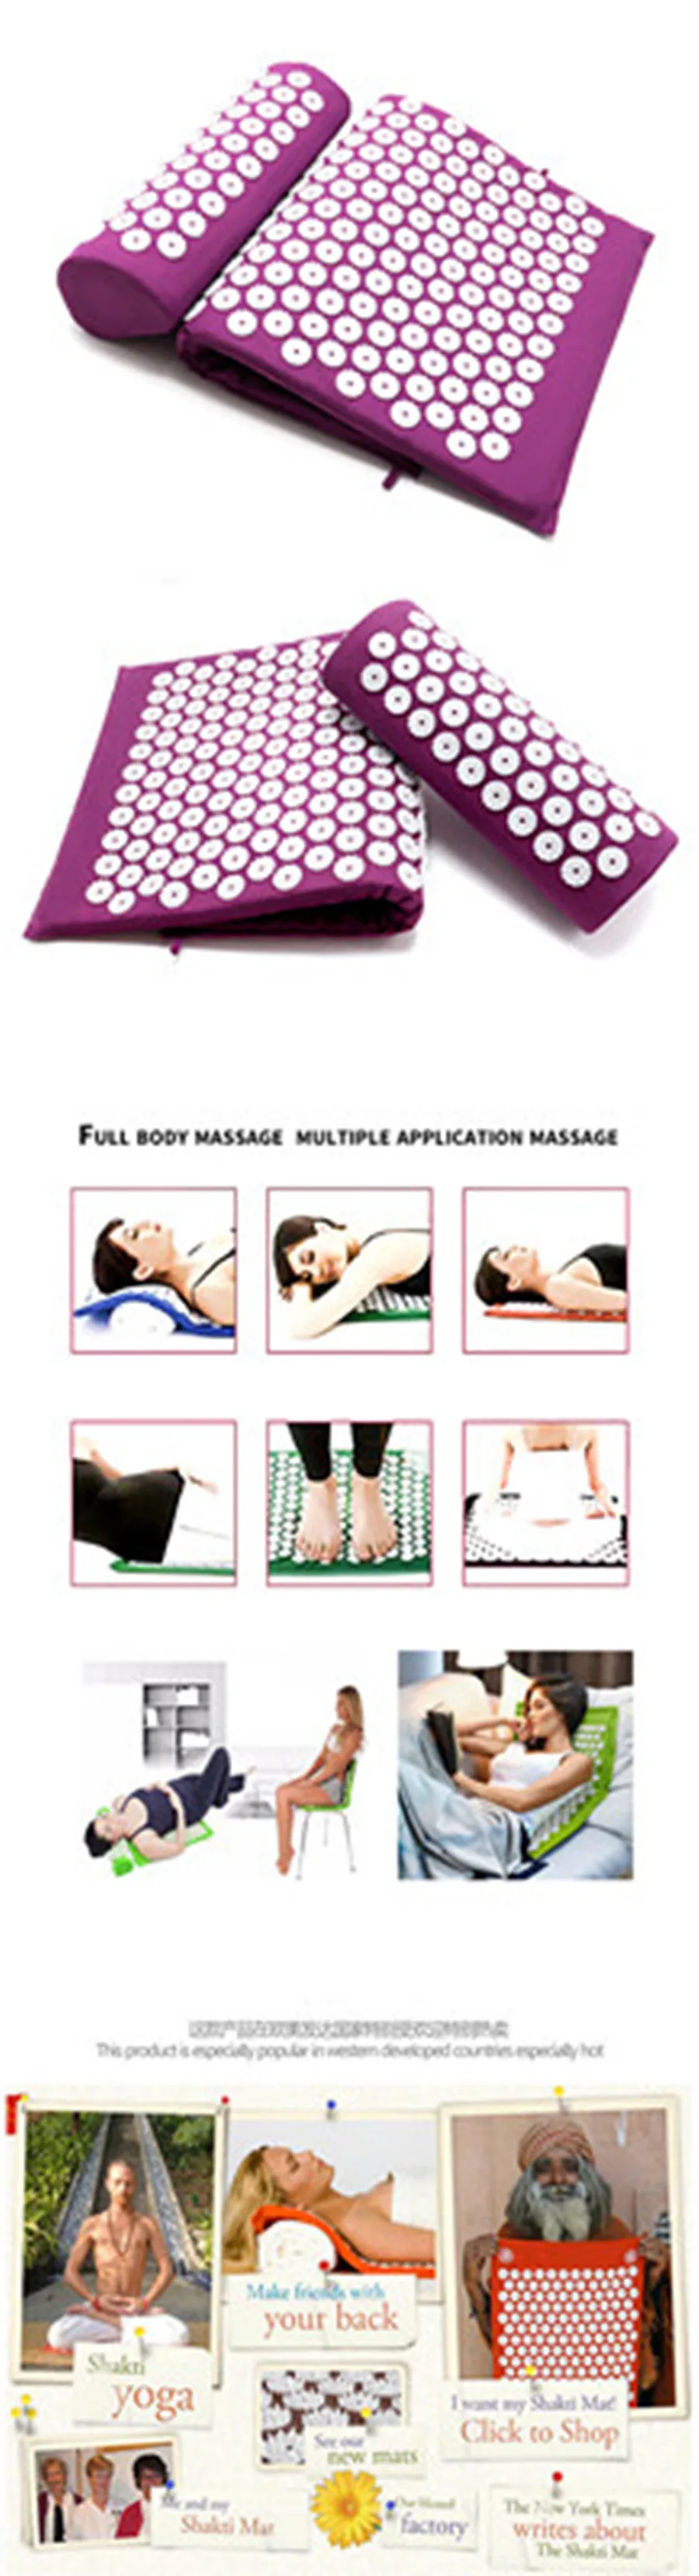 GR лечения лотоса ковриками коврик для массажа ног Акупрессура подушка коврик для занятий фитнесом, йогой рельеф телесная боль